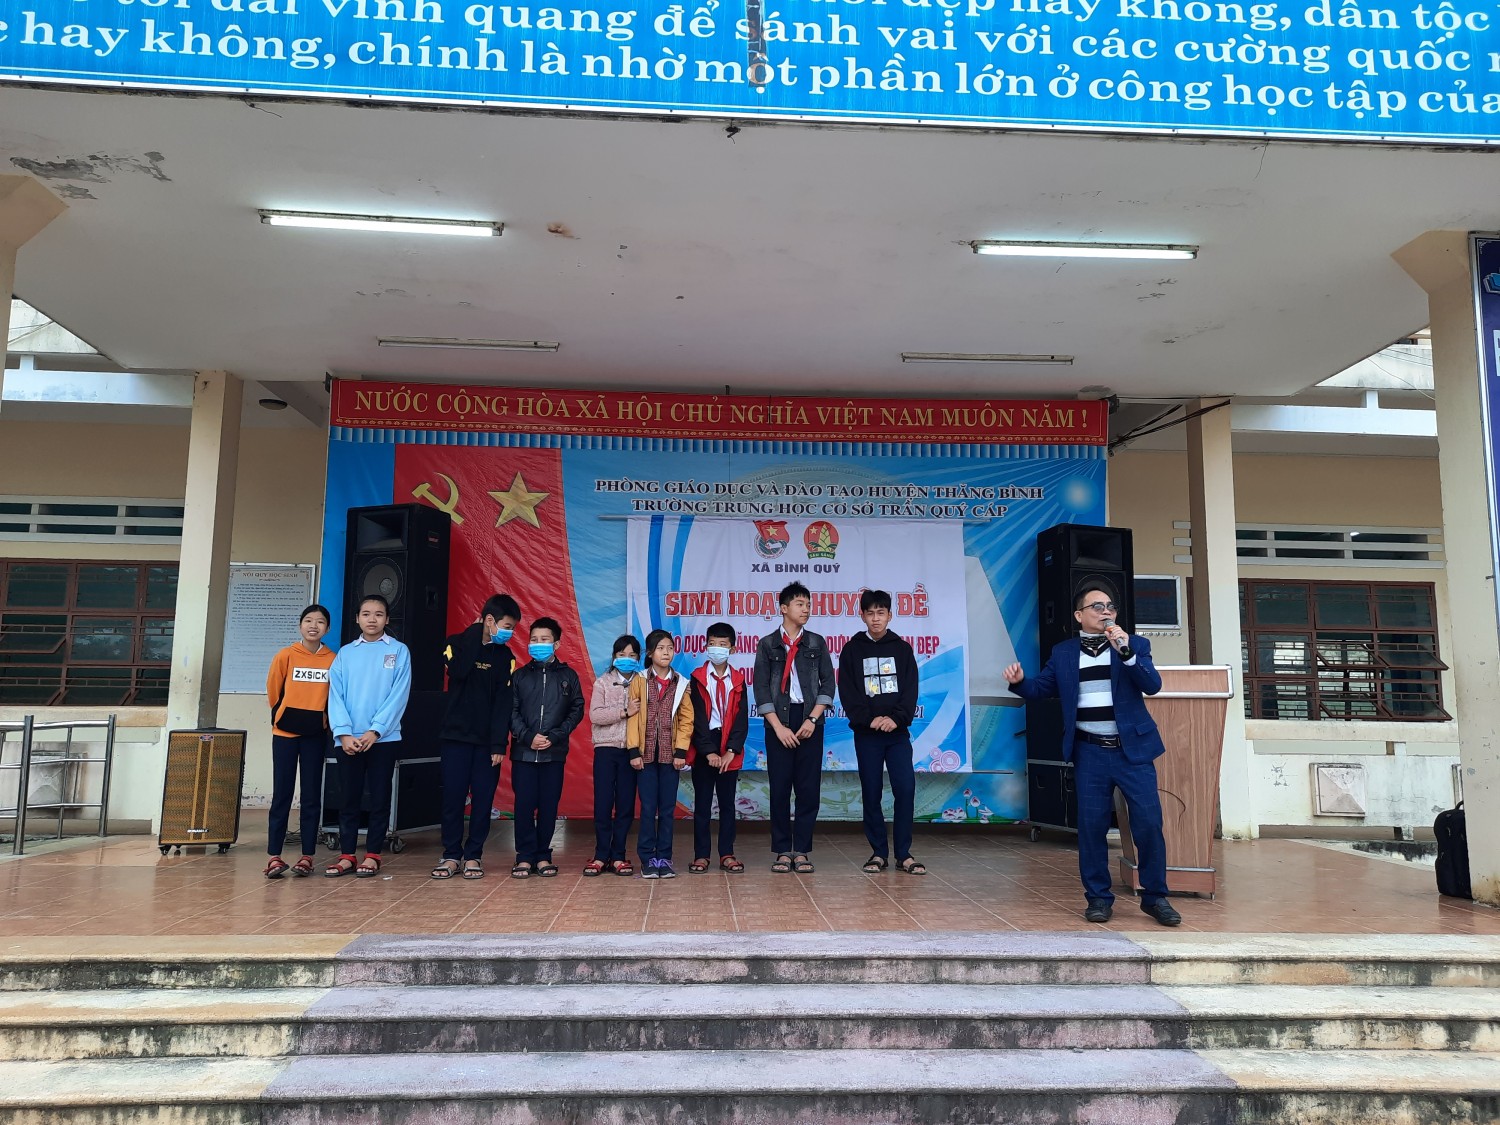 Đoàn - Hội đồng đội xã Bình Quý tổ chức buổi sinh hoạt với chuyên đề "Giáo dục kỹ năng sống" cho học sinh trường THCS Trần Quý Cáp